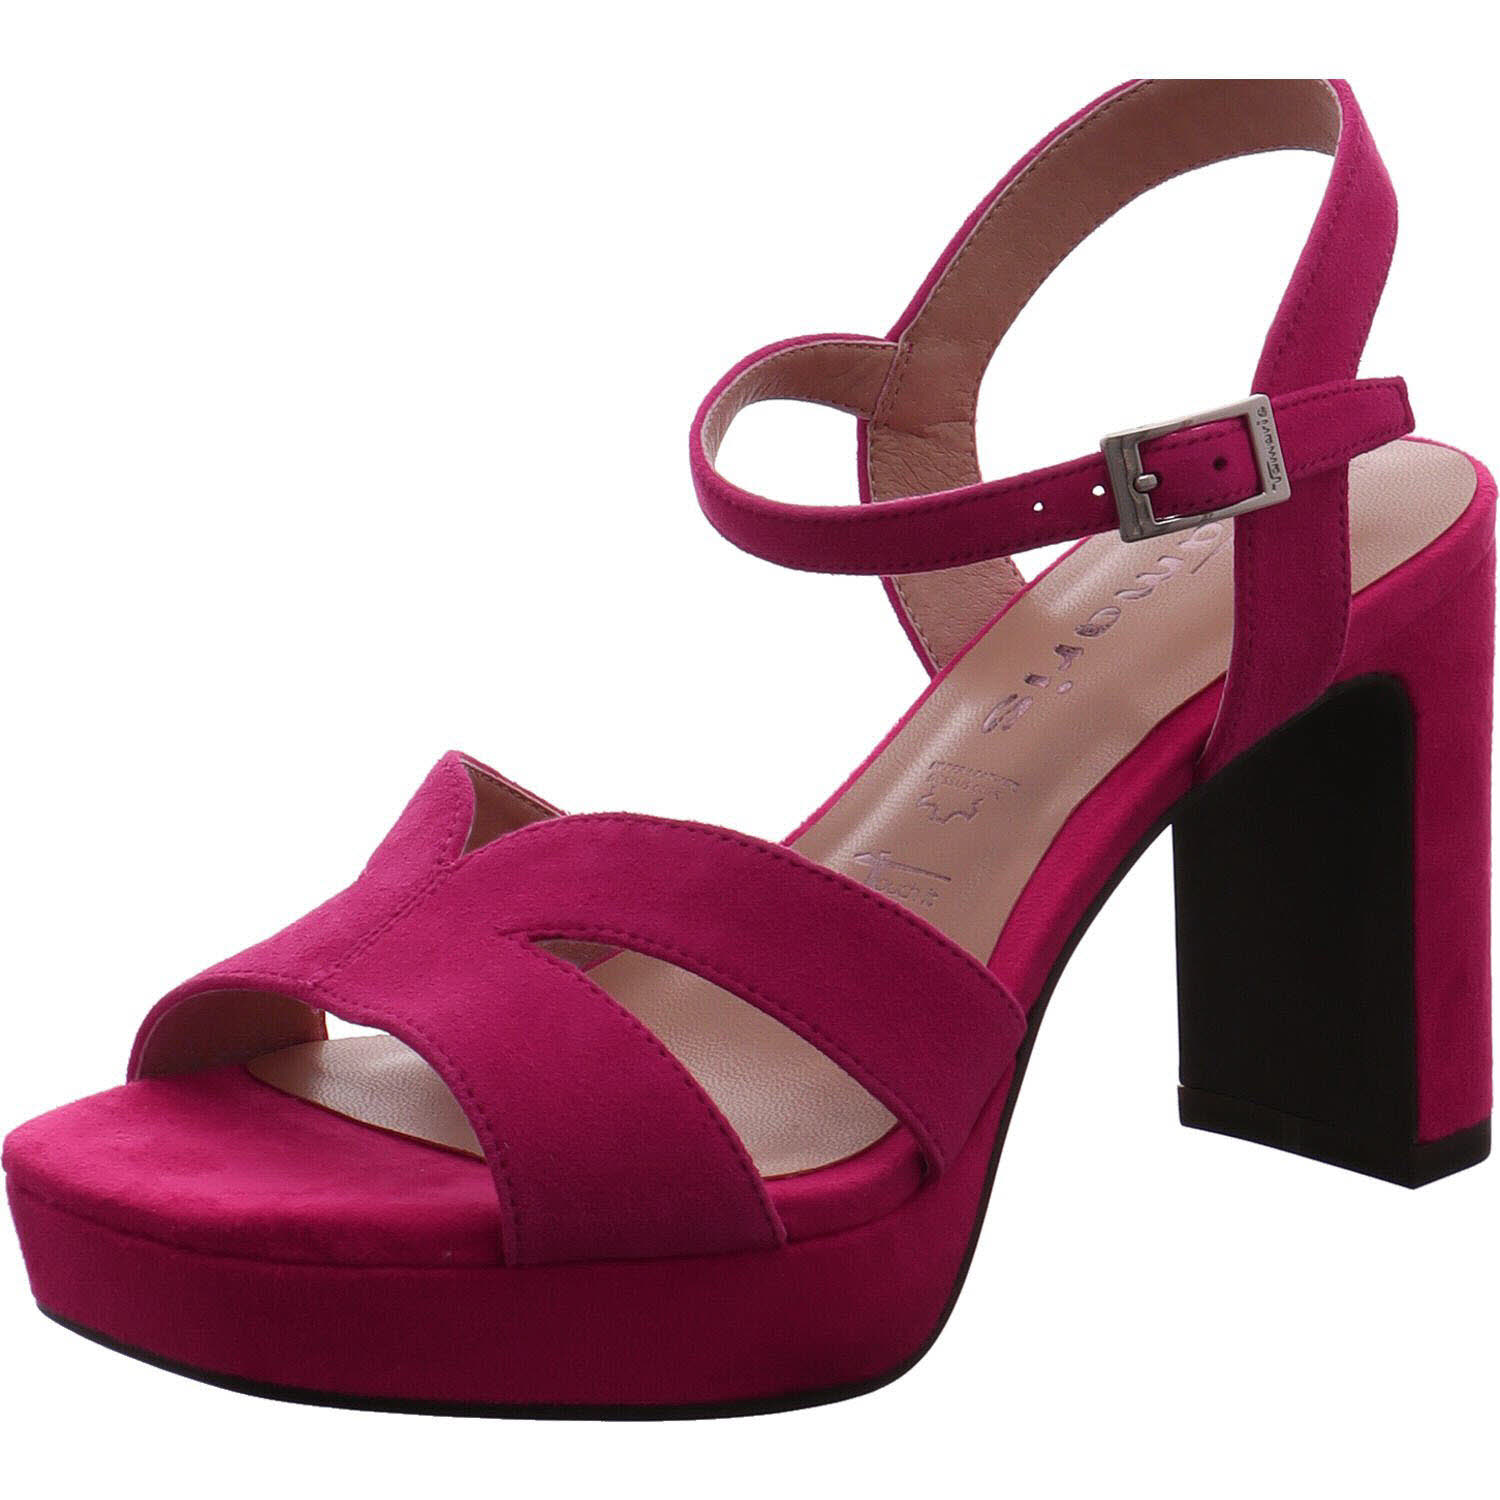 Damen Sandalette von Tamaris auch in Pink erhältlich